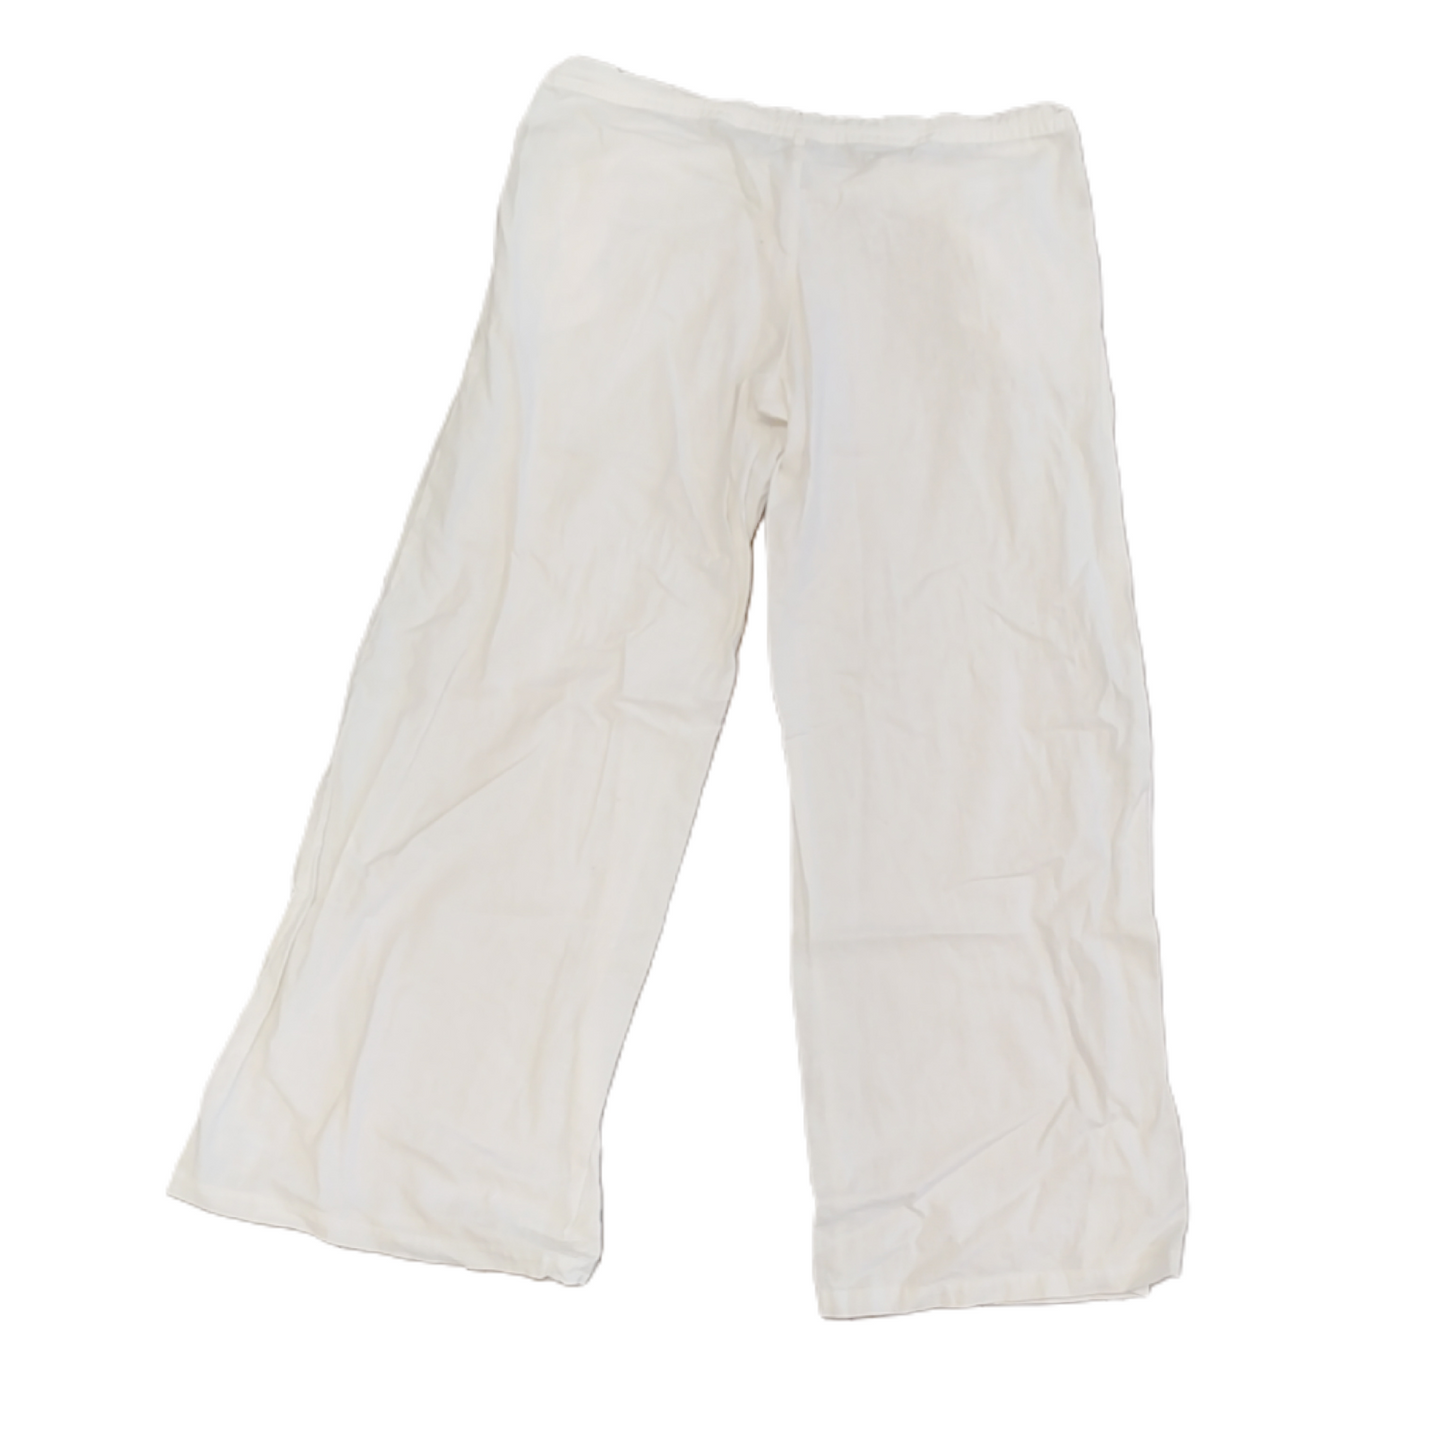 White Pants Linen By Banana Republic, Size: S